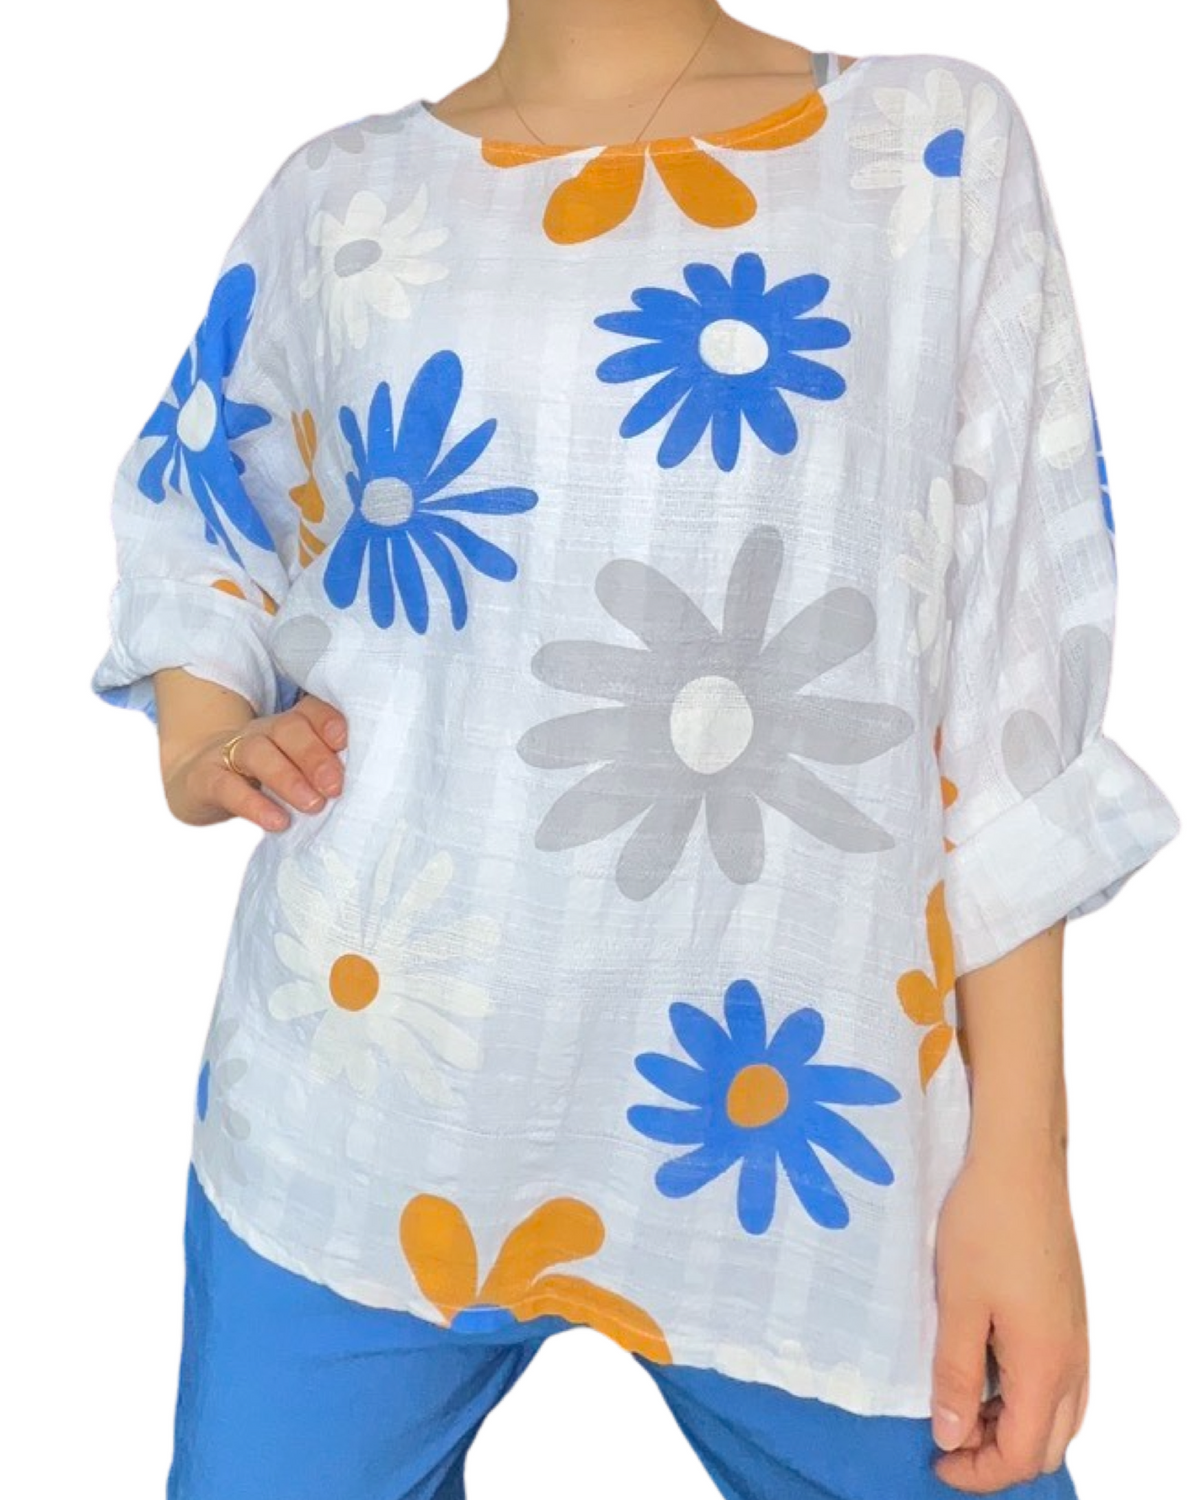 Chandail blanc pour femme avec imprimé de fleurs bleues et grises porté over size.